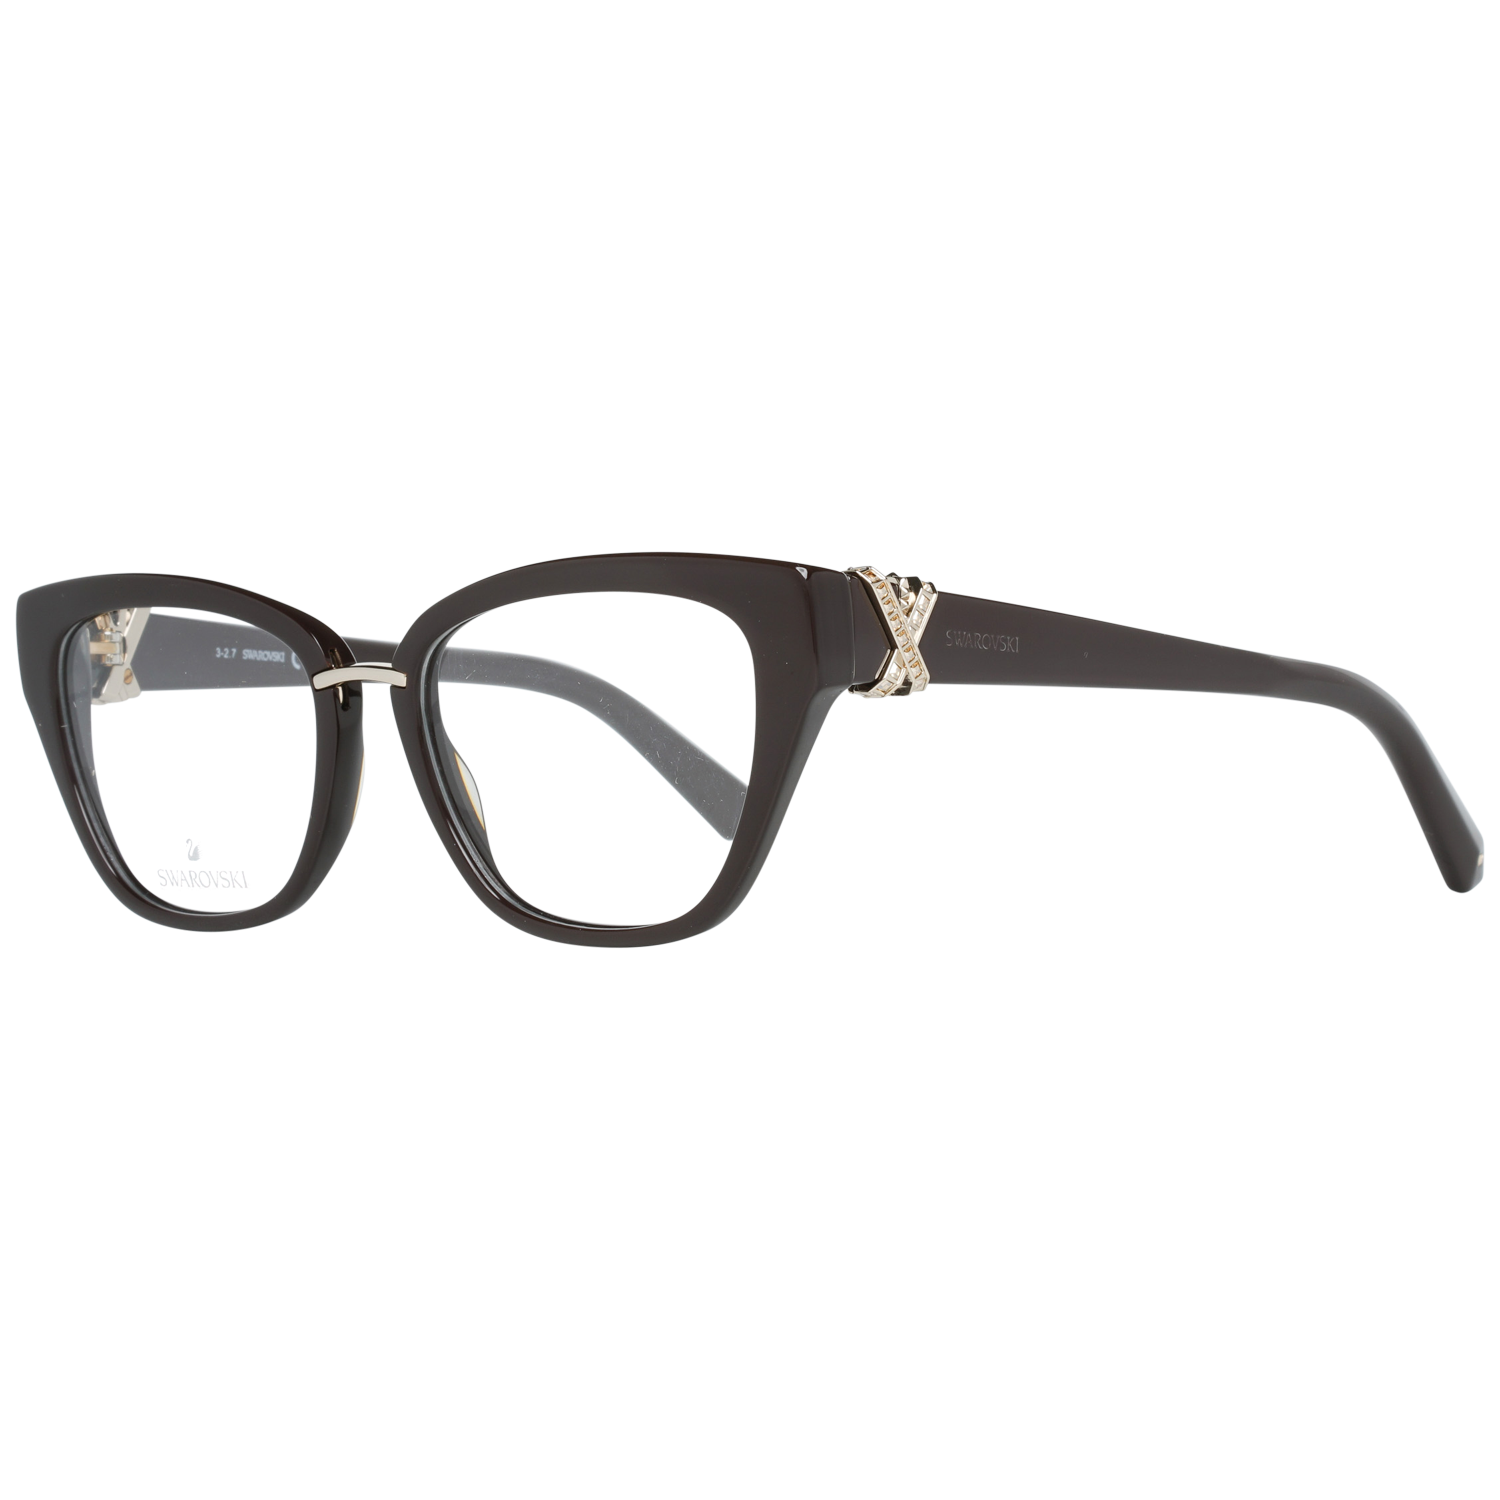 Swarovski Frames Swarovski Women Glasses Optical Frame SK5251 052 50 Eyeglasses Eyewear UK USA Australia 